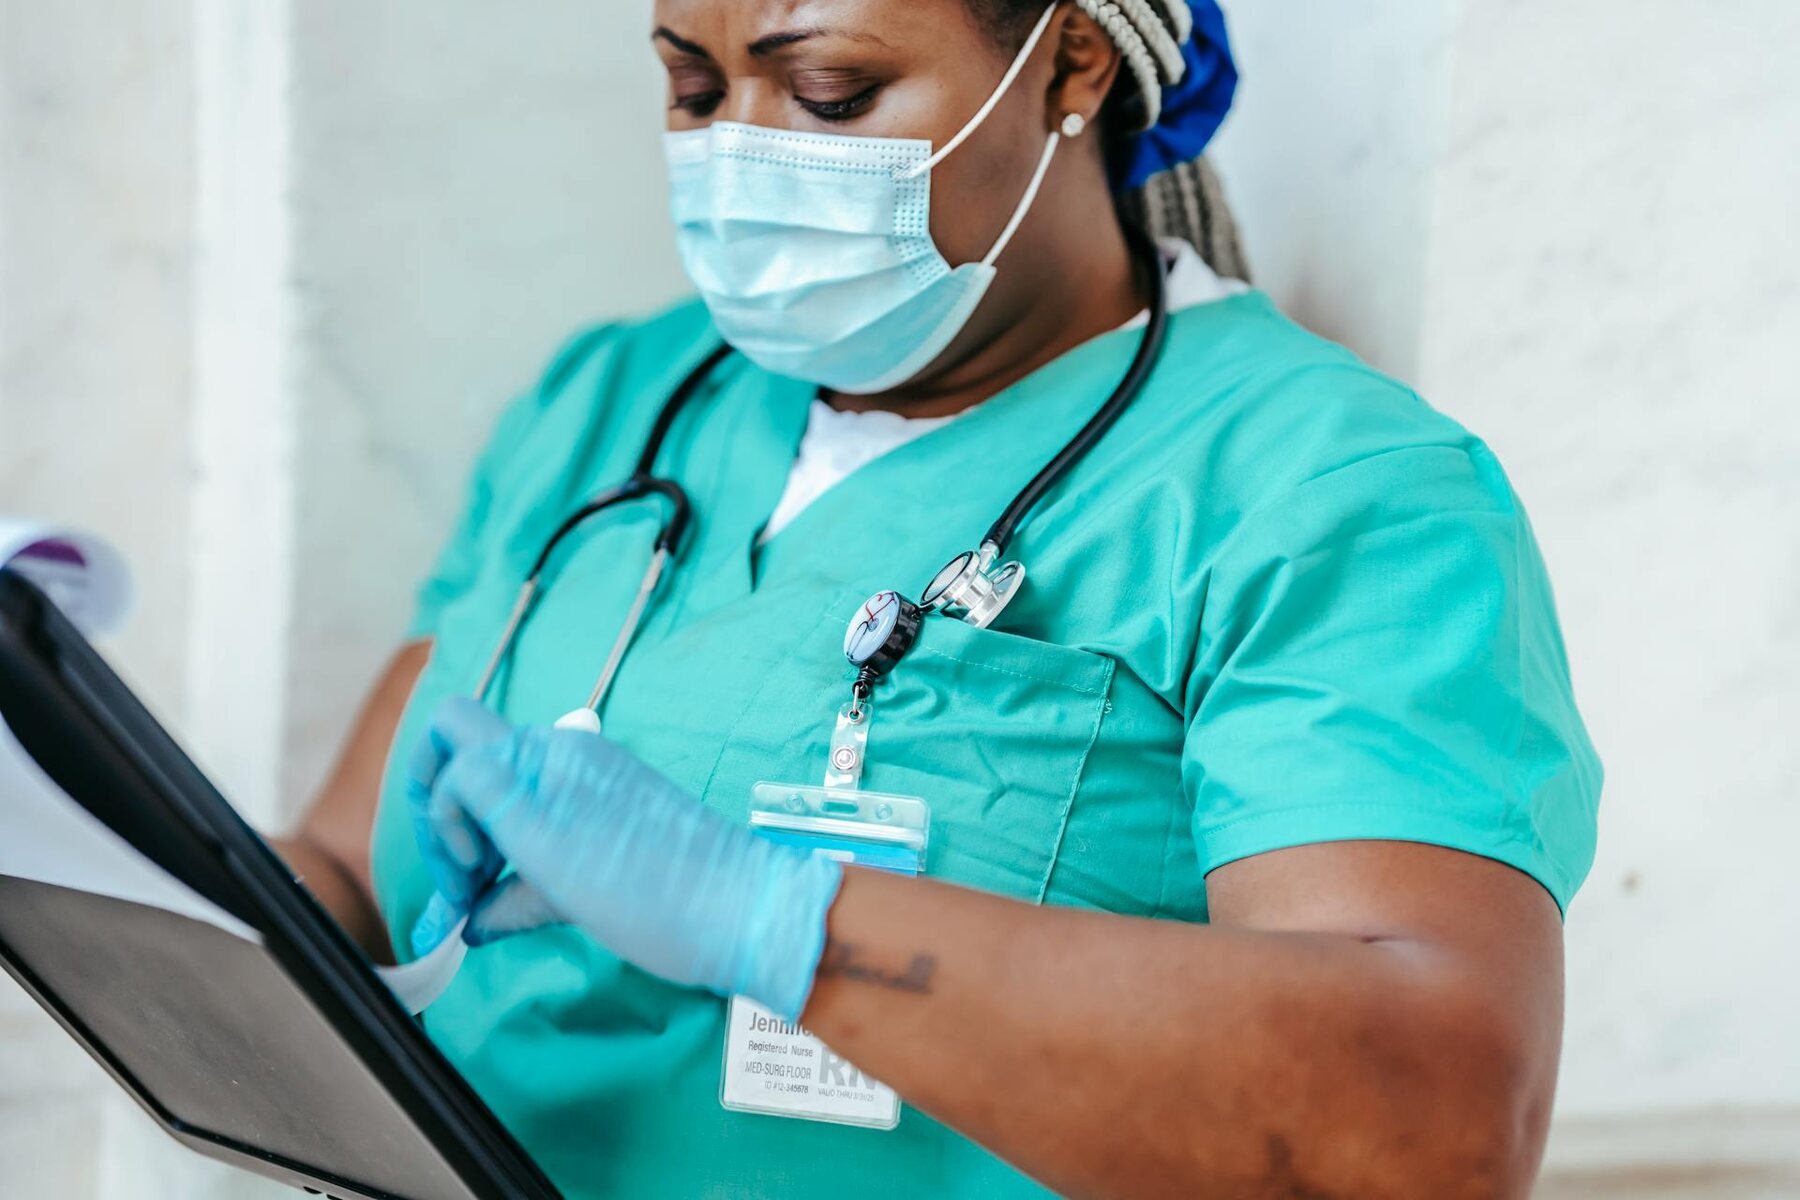 Nurse in green scrubs holding clipboard